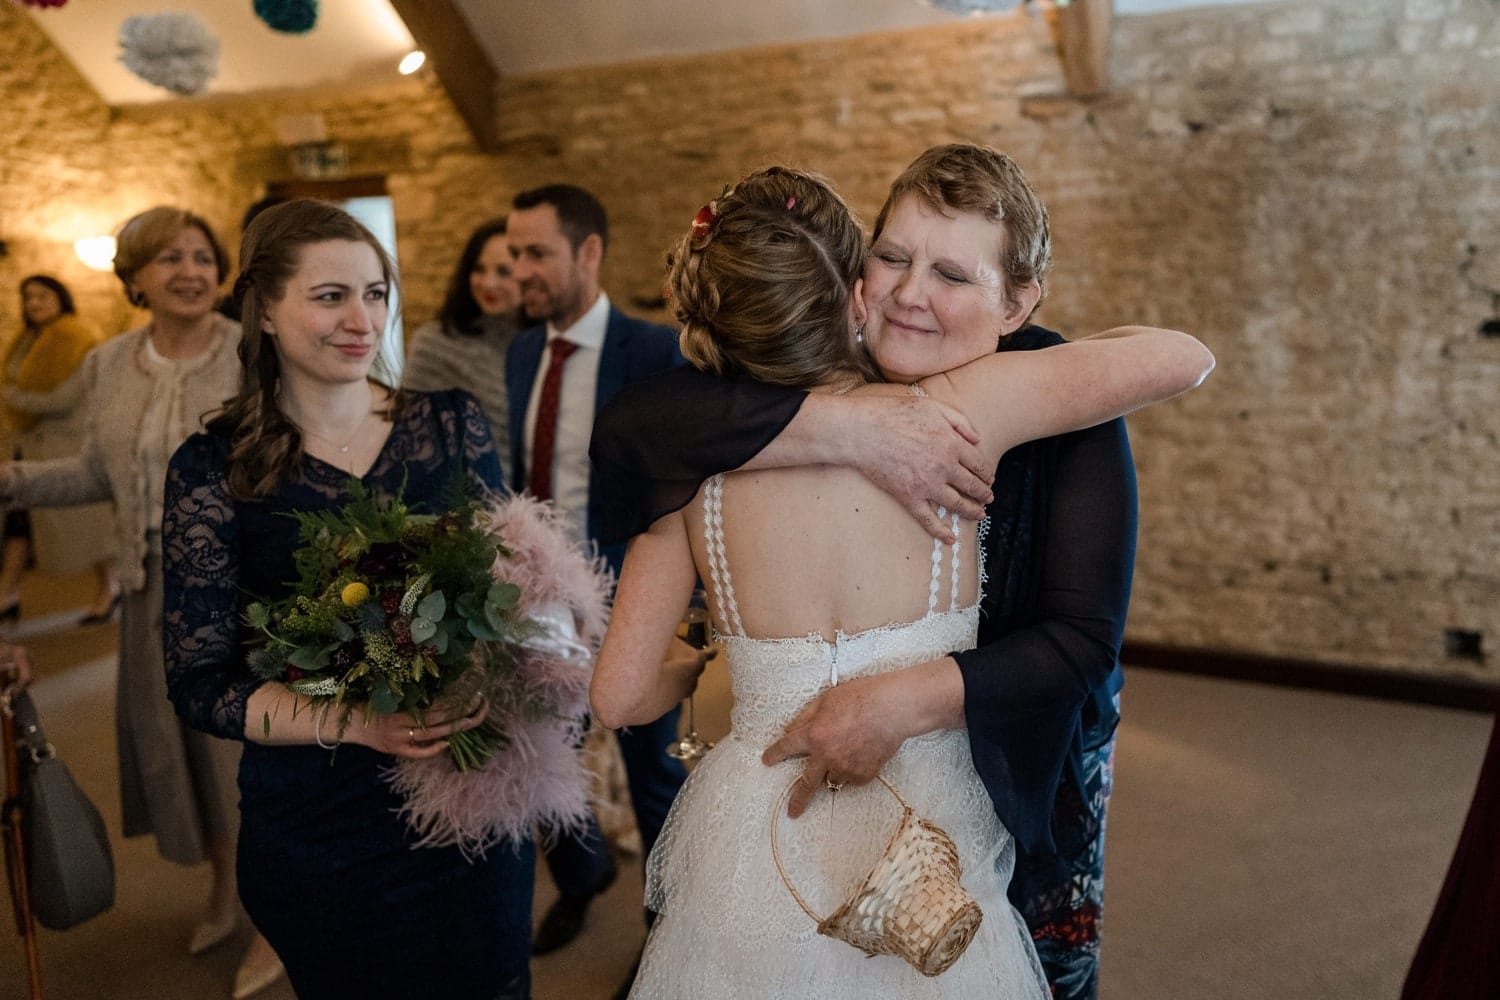 Wedding guests congratulate bride